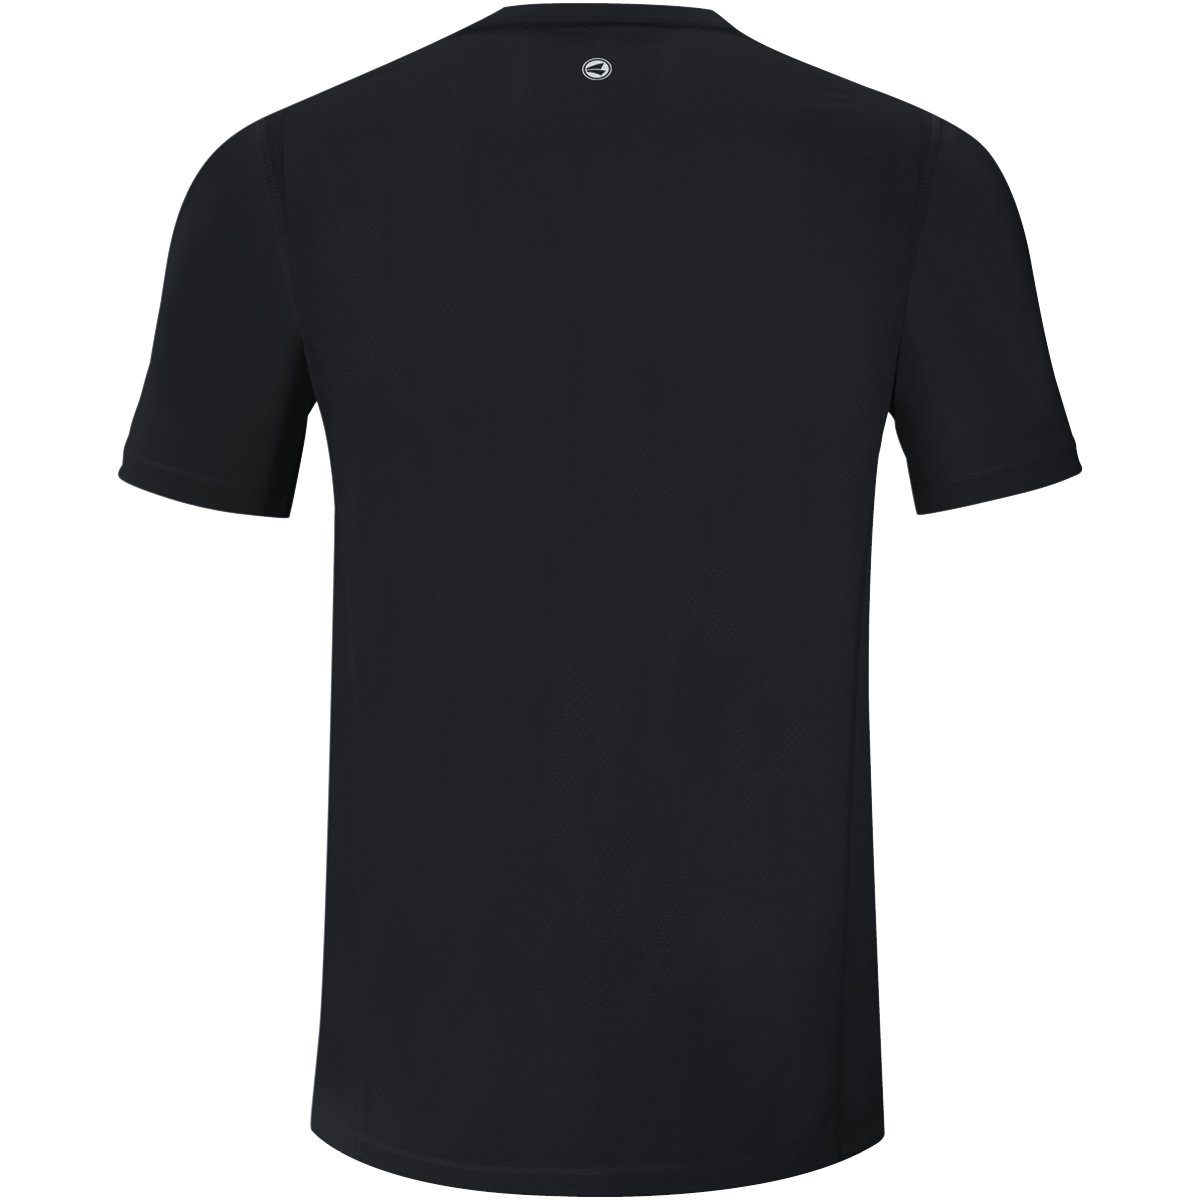 Jako schwarz/weiý Kurzarmshirt T-Shirt 2.0 Run